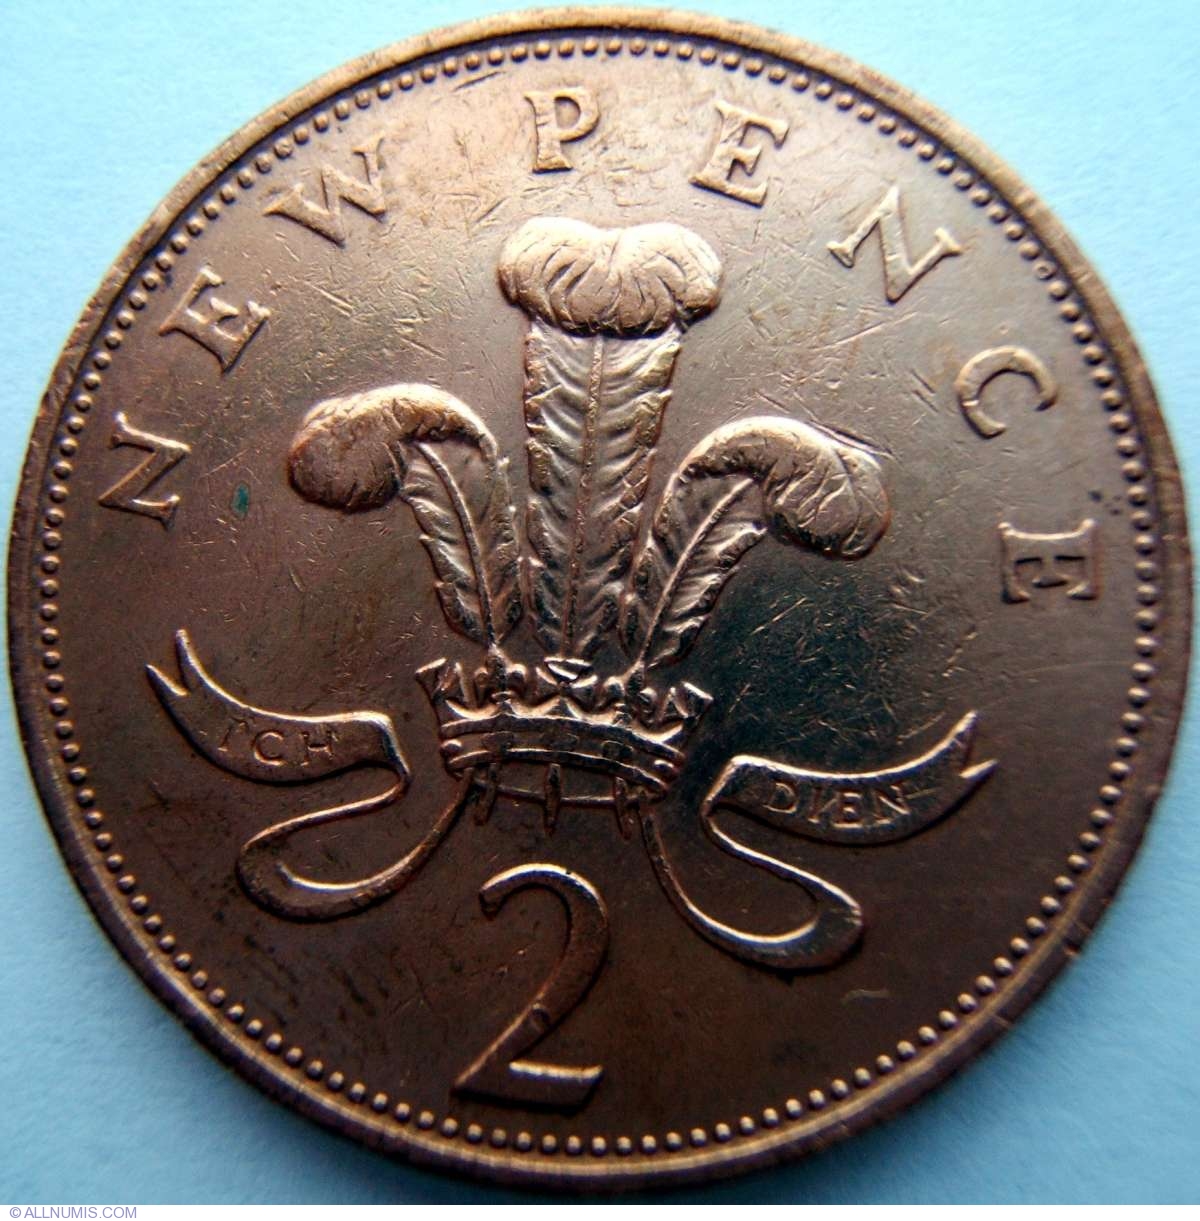 1978 elizabeth ii coin value